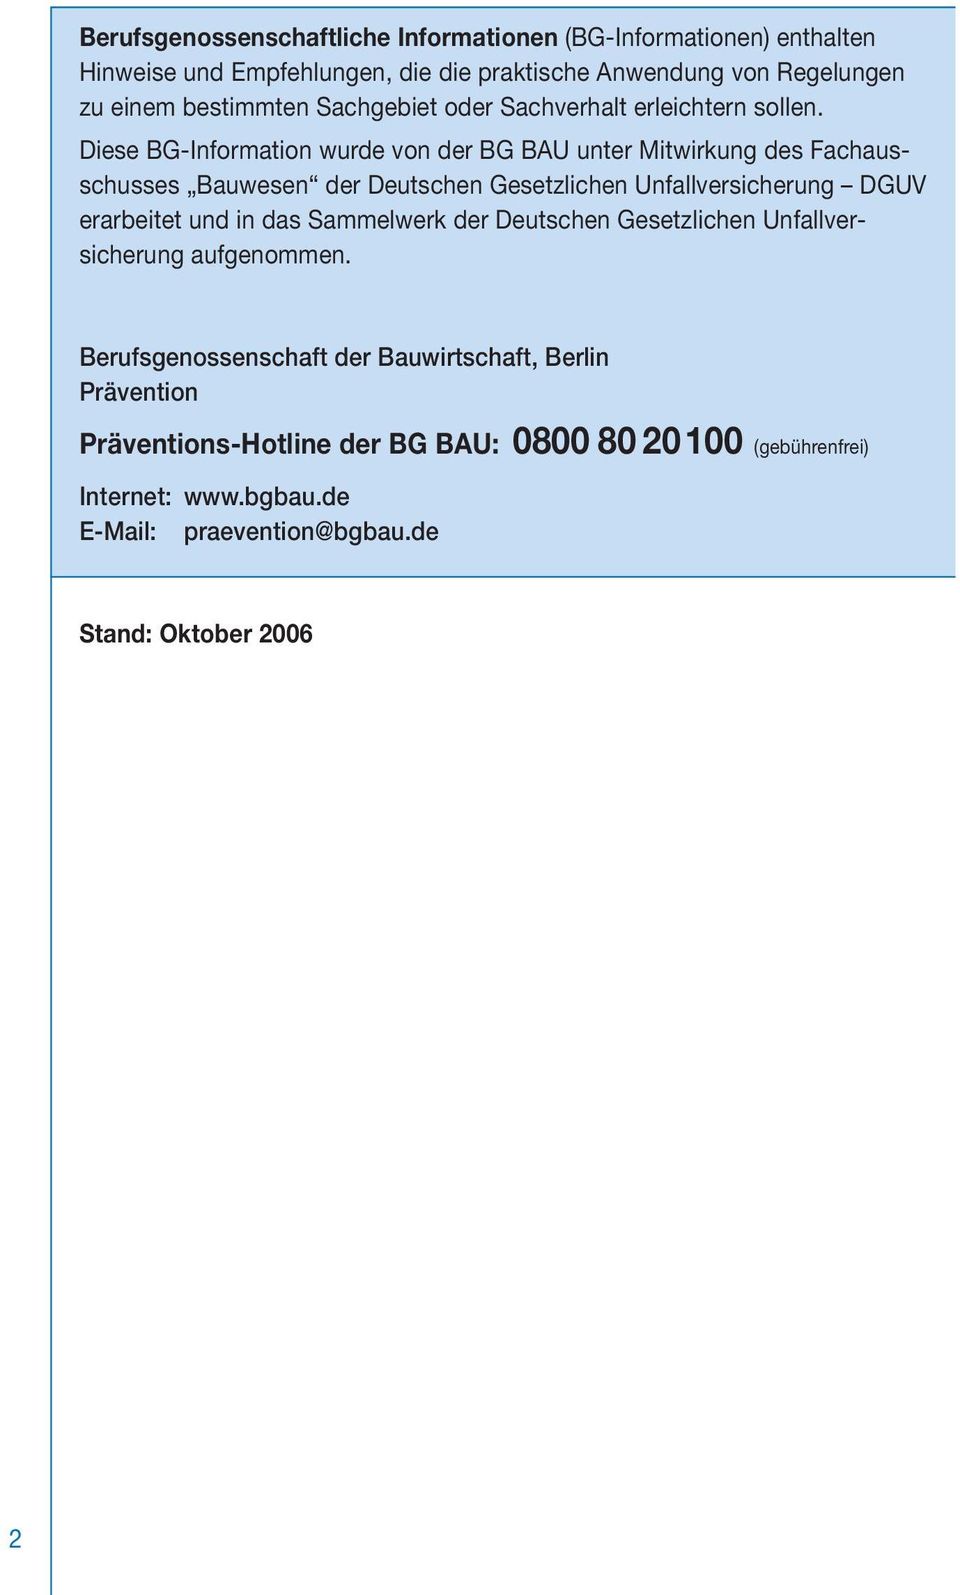 Diese BG-Information wurde von der BG BAU unter Mitwirkung des Fachausschusses Bauwesen der Deutschen Gesetzlichen Unfallversicherung DGUV erarbeitet und in